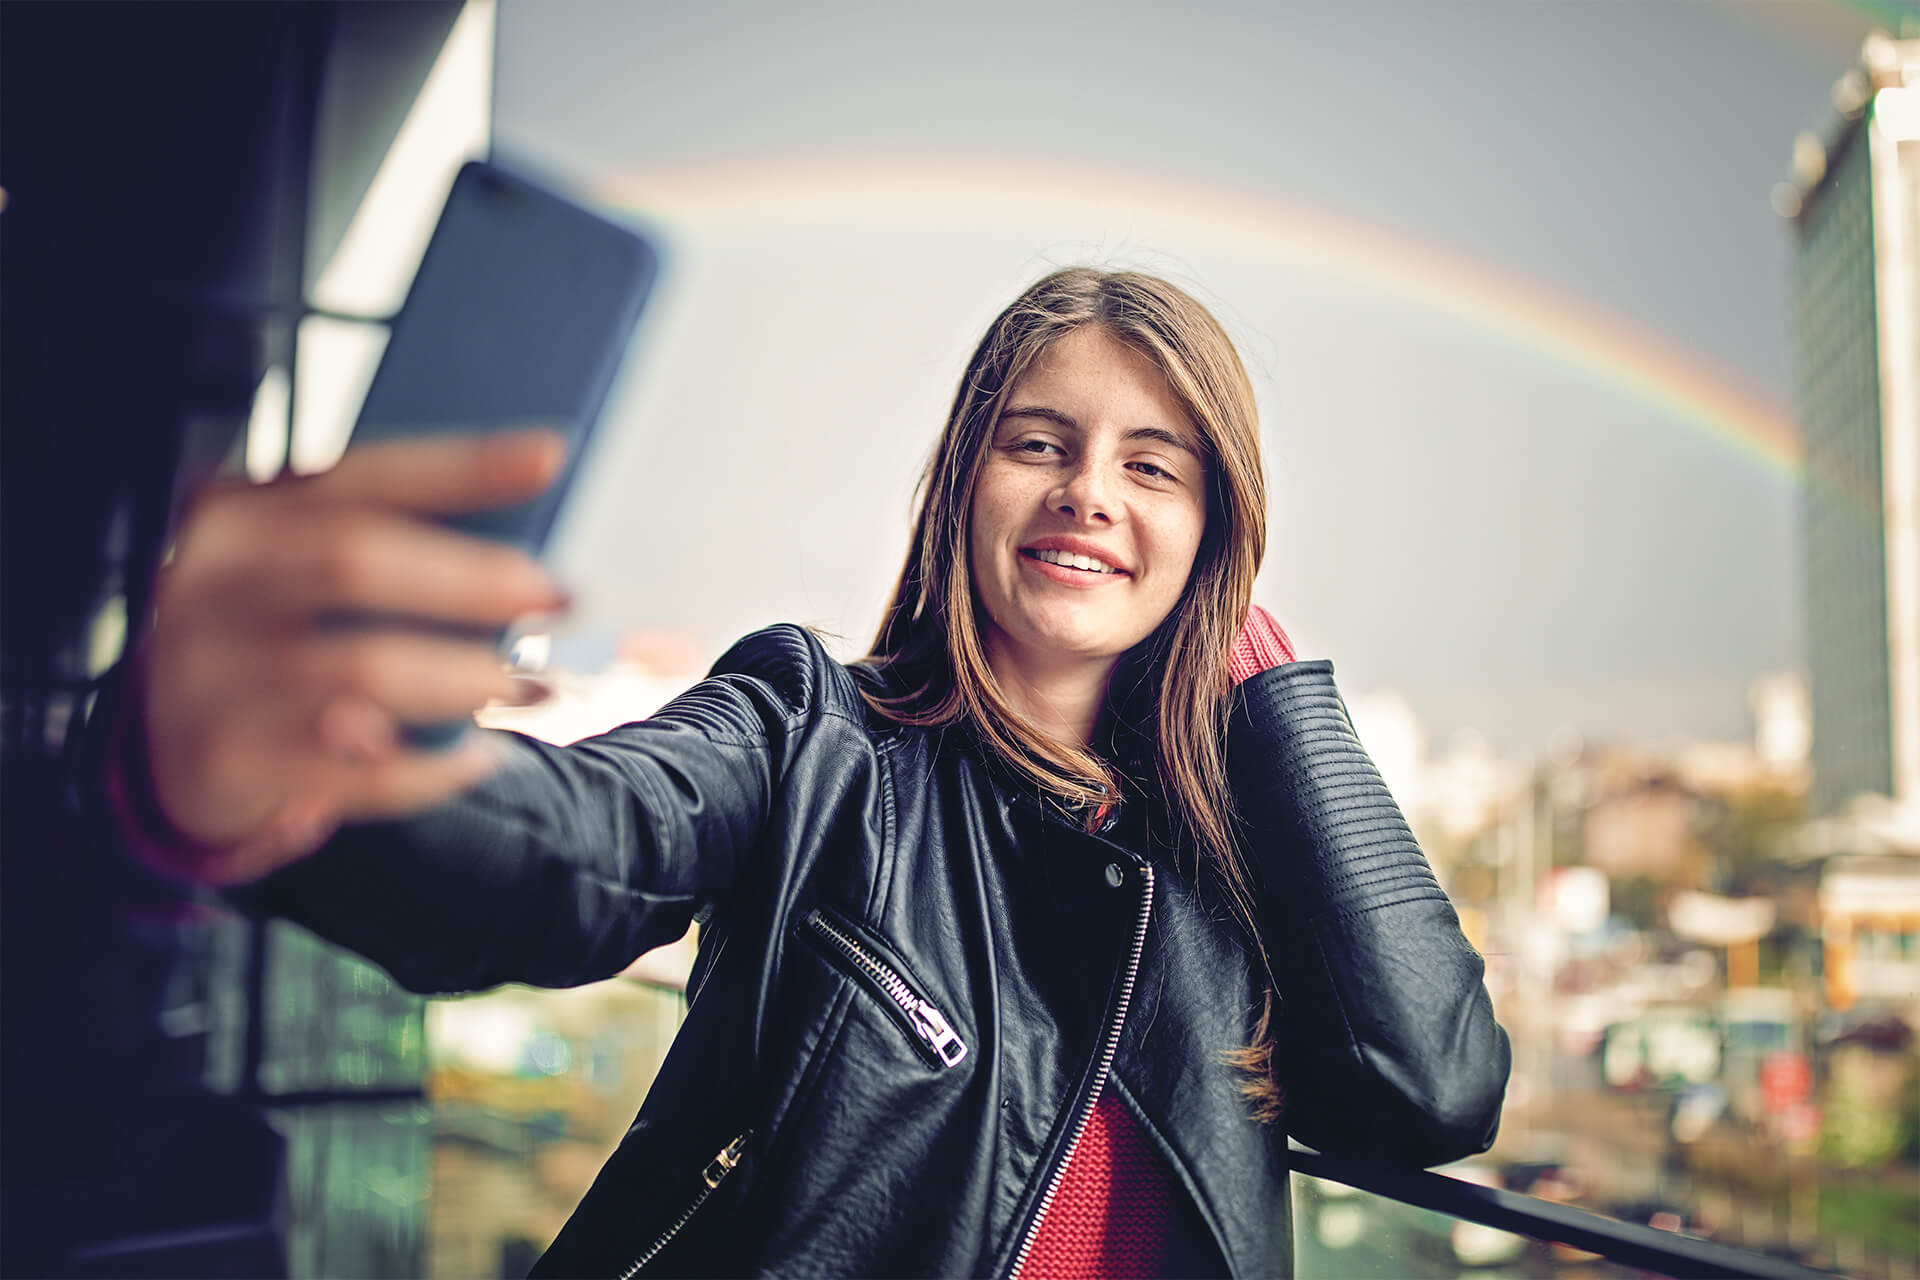 Mädchen macht ein Selfie. Im Hintergrund ist ein Regenbogen zu sehen.